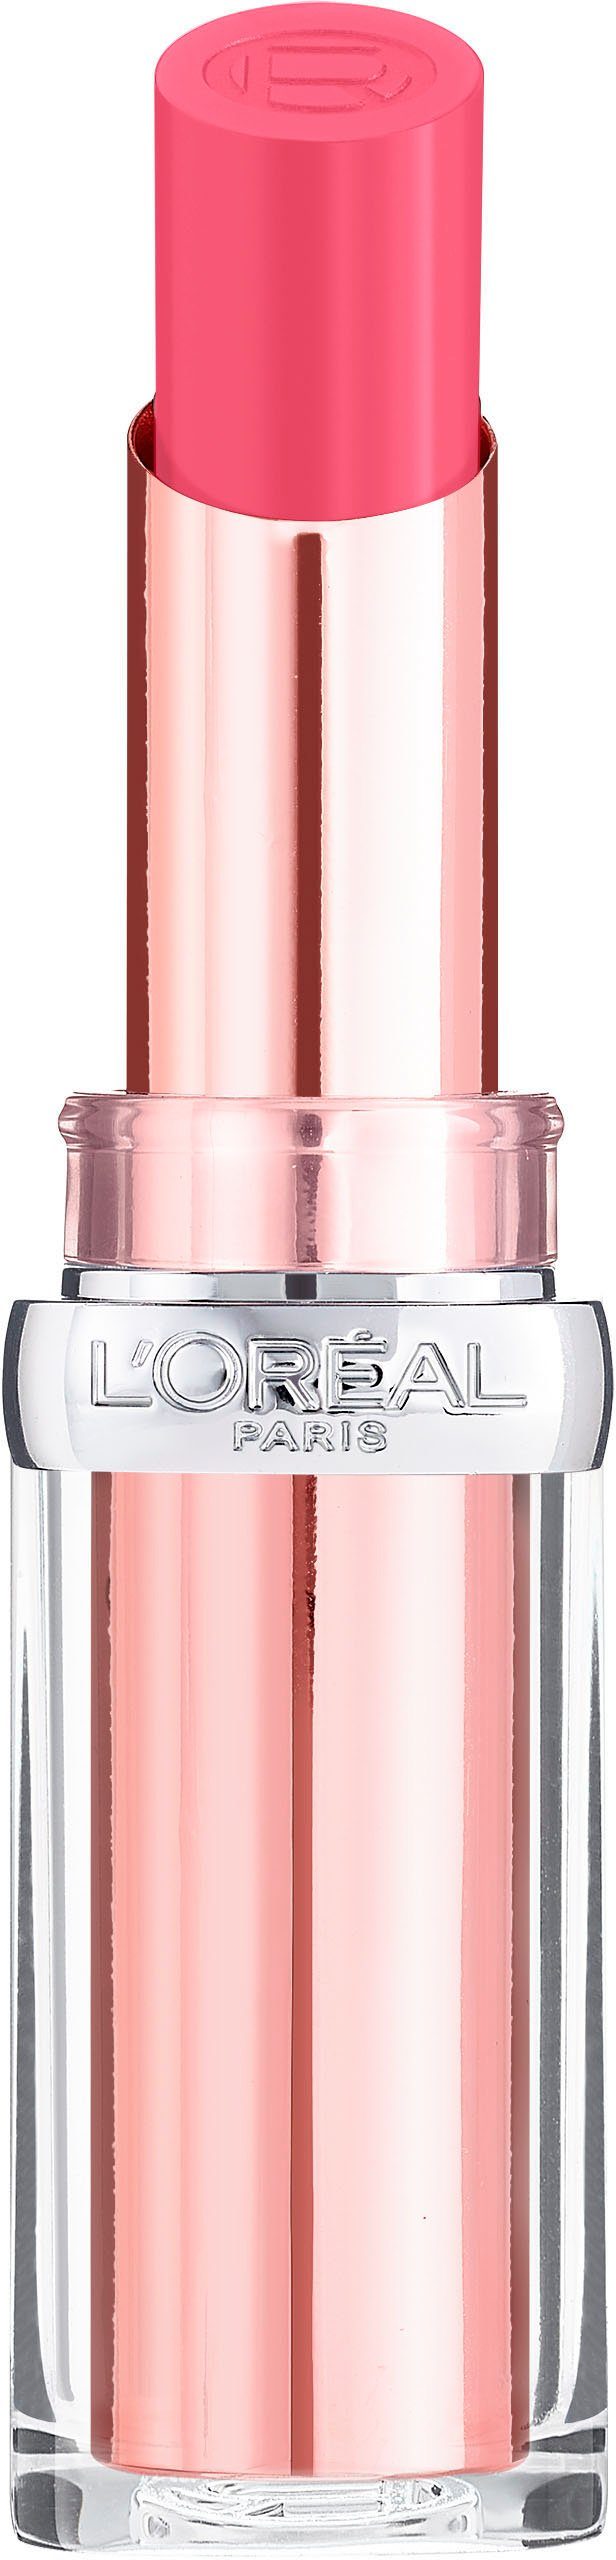 Wonderland Color L'ORÉAL 111 PARIS Lippenstift Paradise Glow Riche Pink